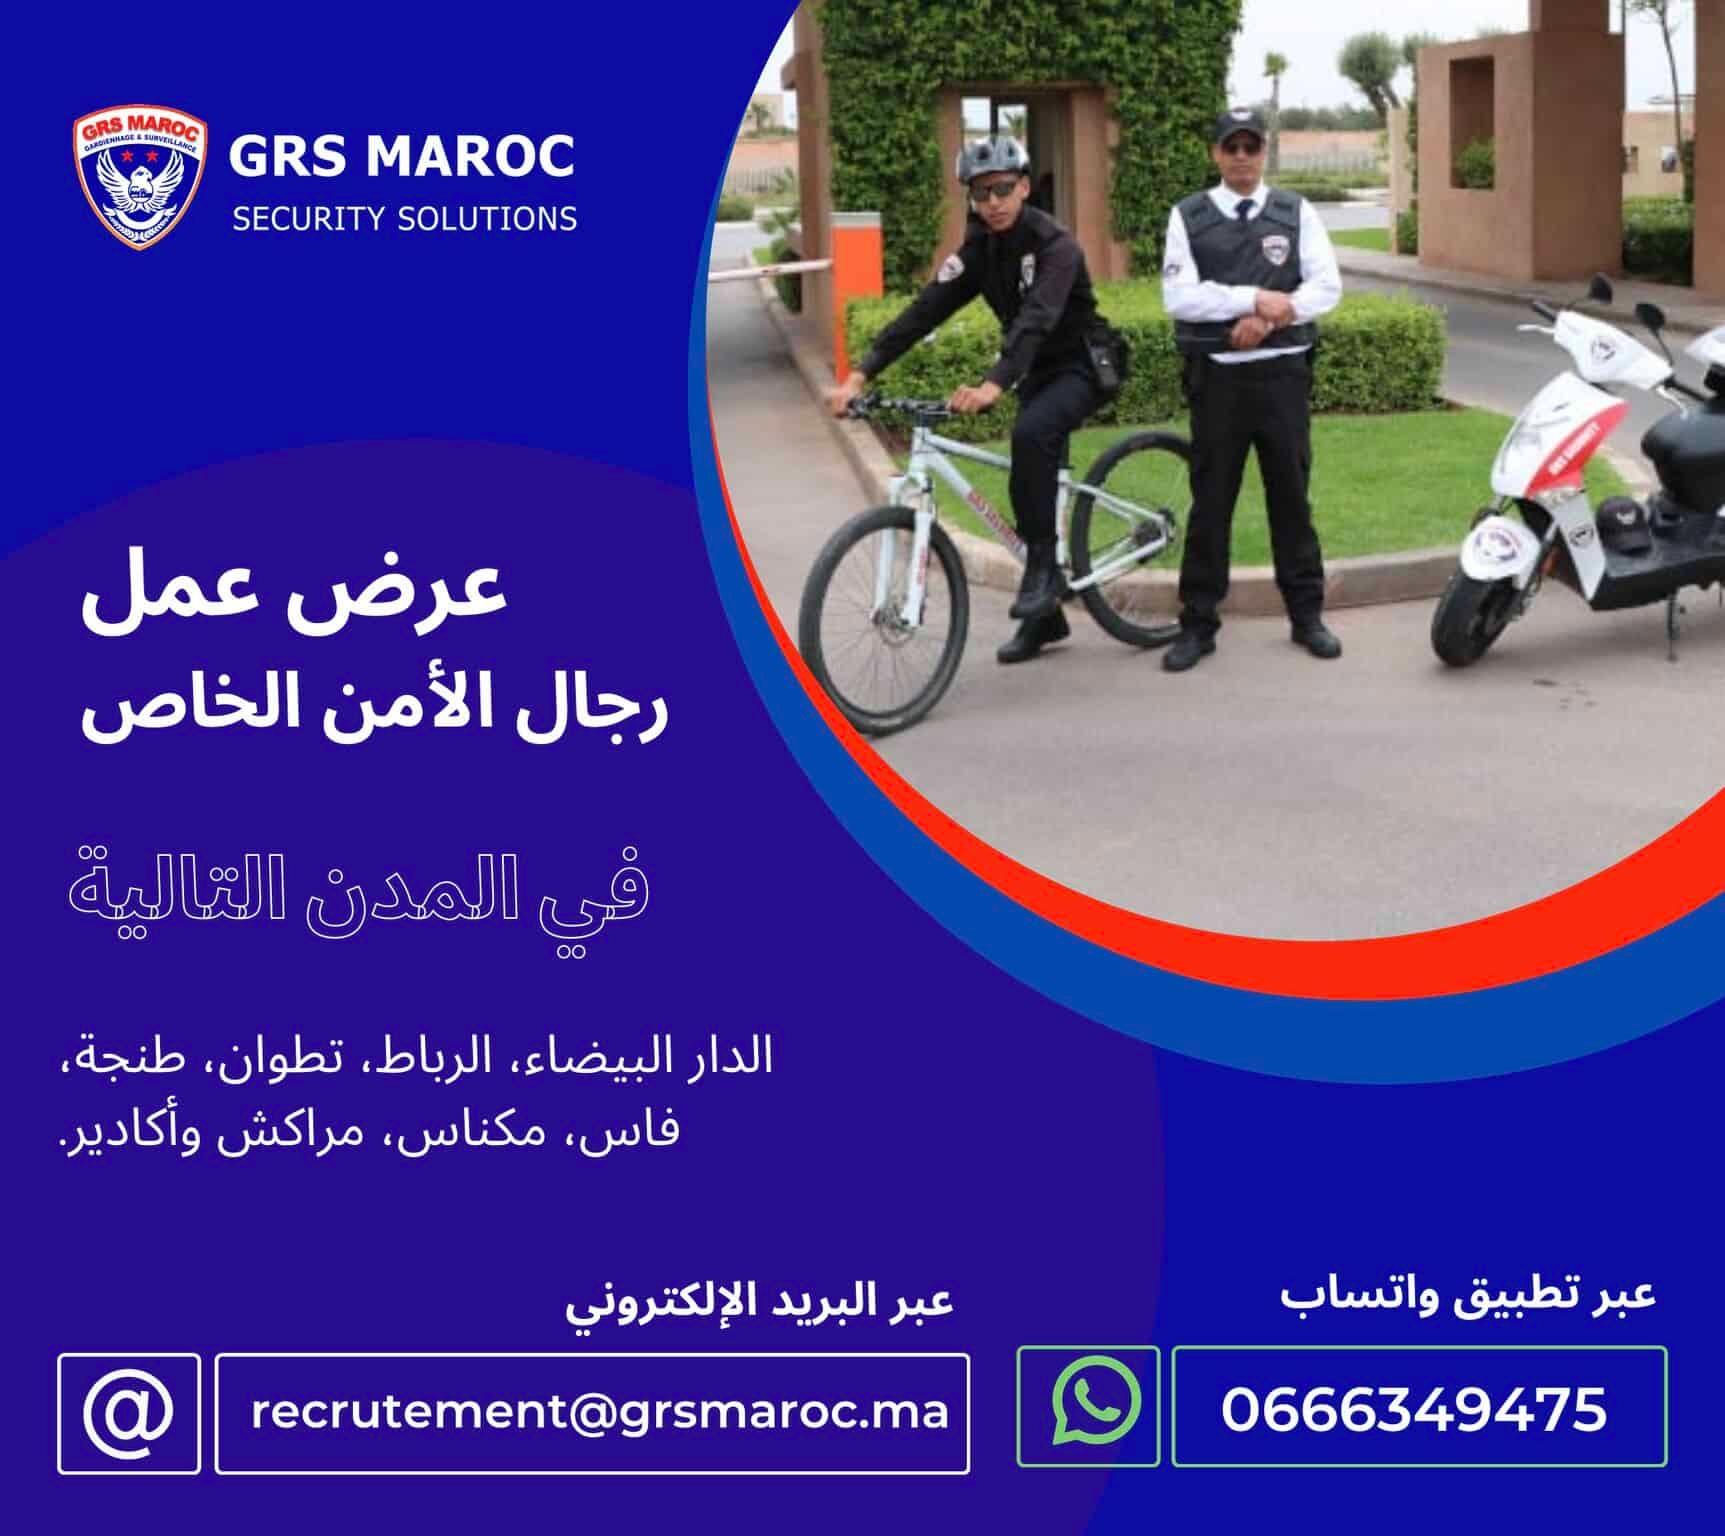 شركة GRS Maroc للأمن الخاص و المراقبة توظف رجال الأمن الخاص في مجموعة من المدن